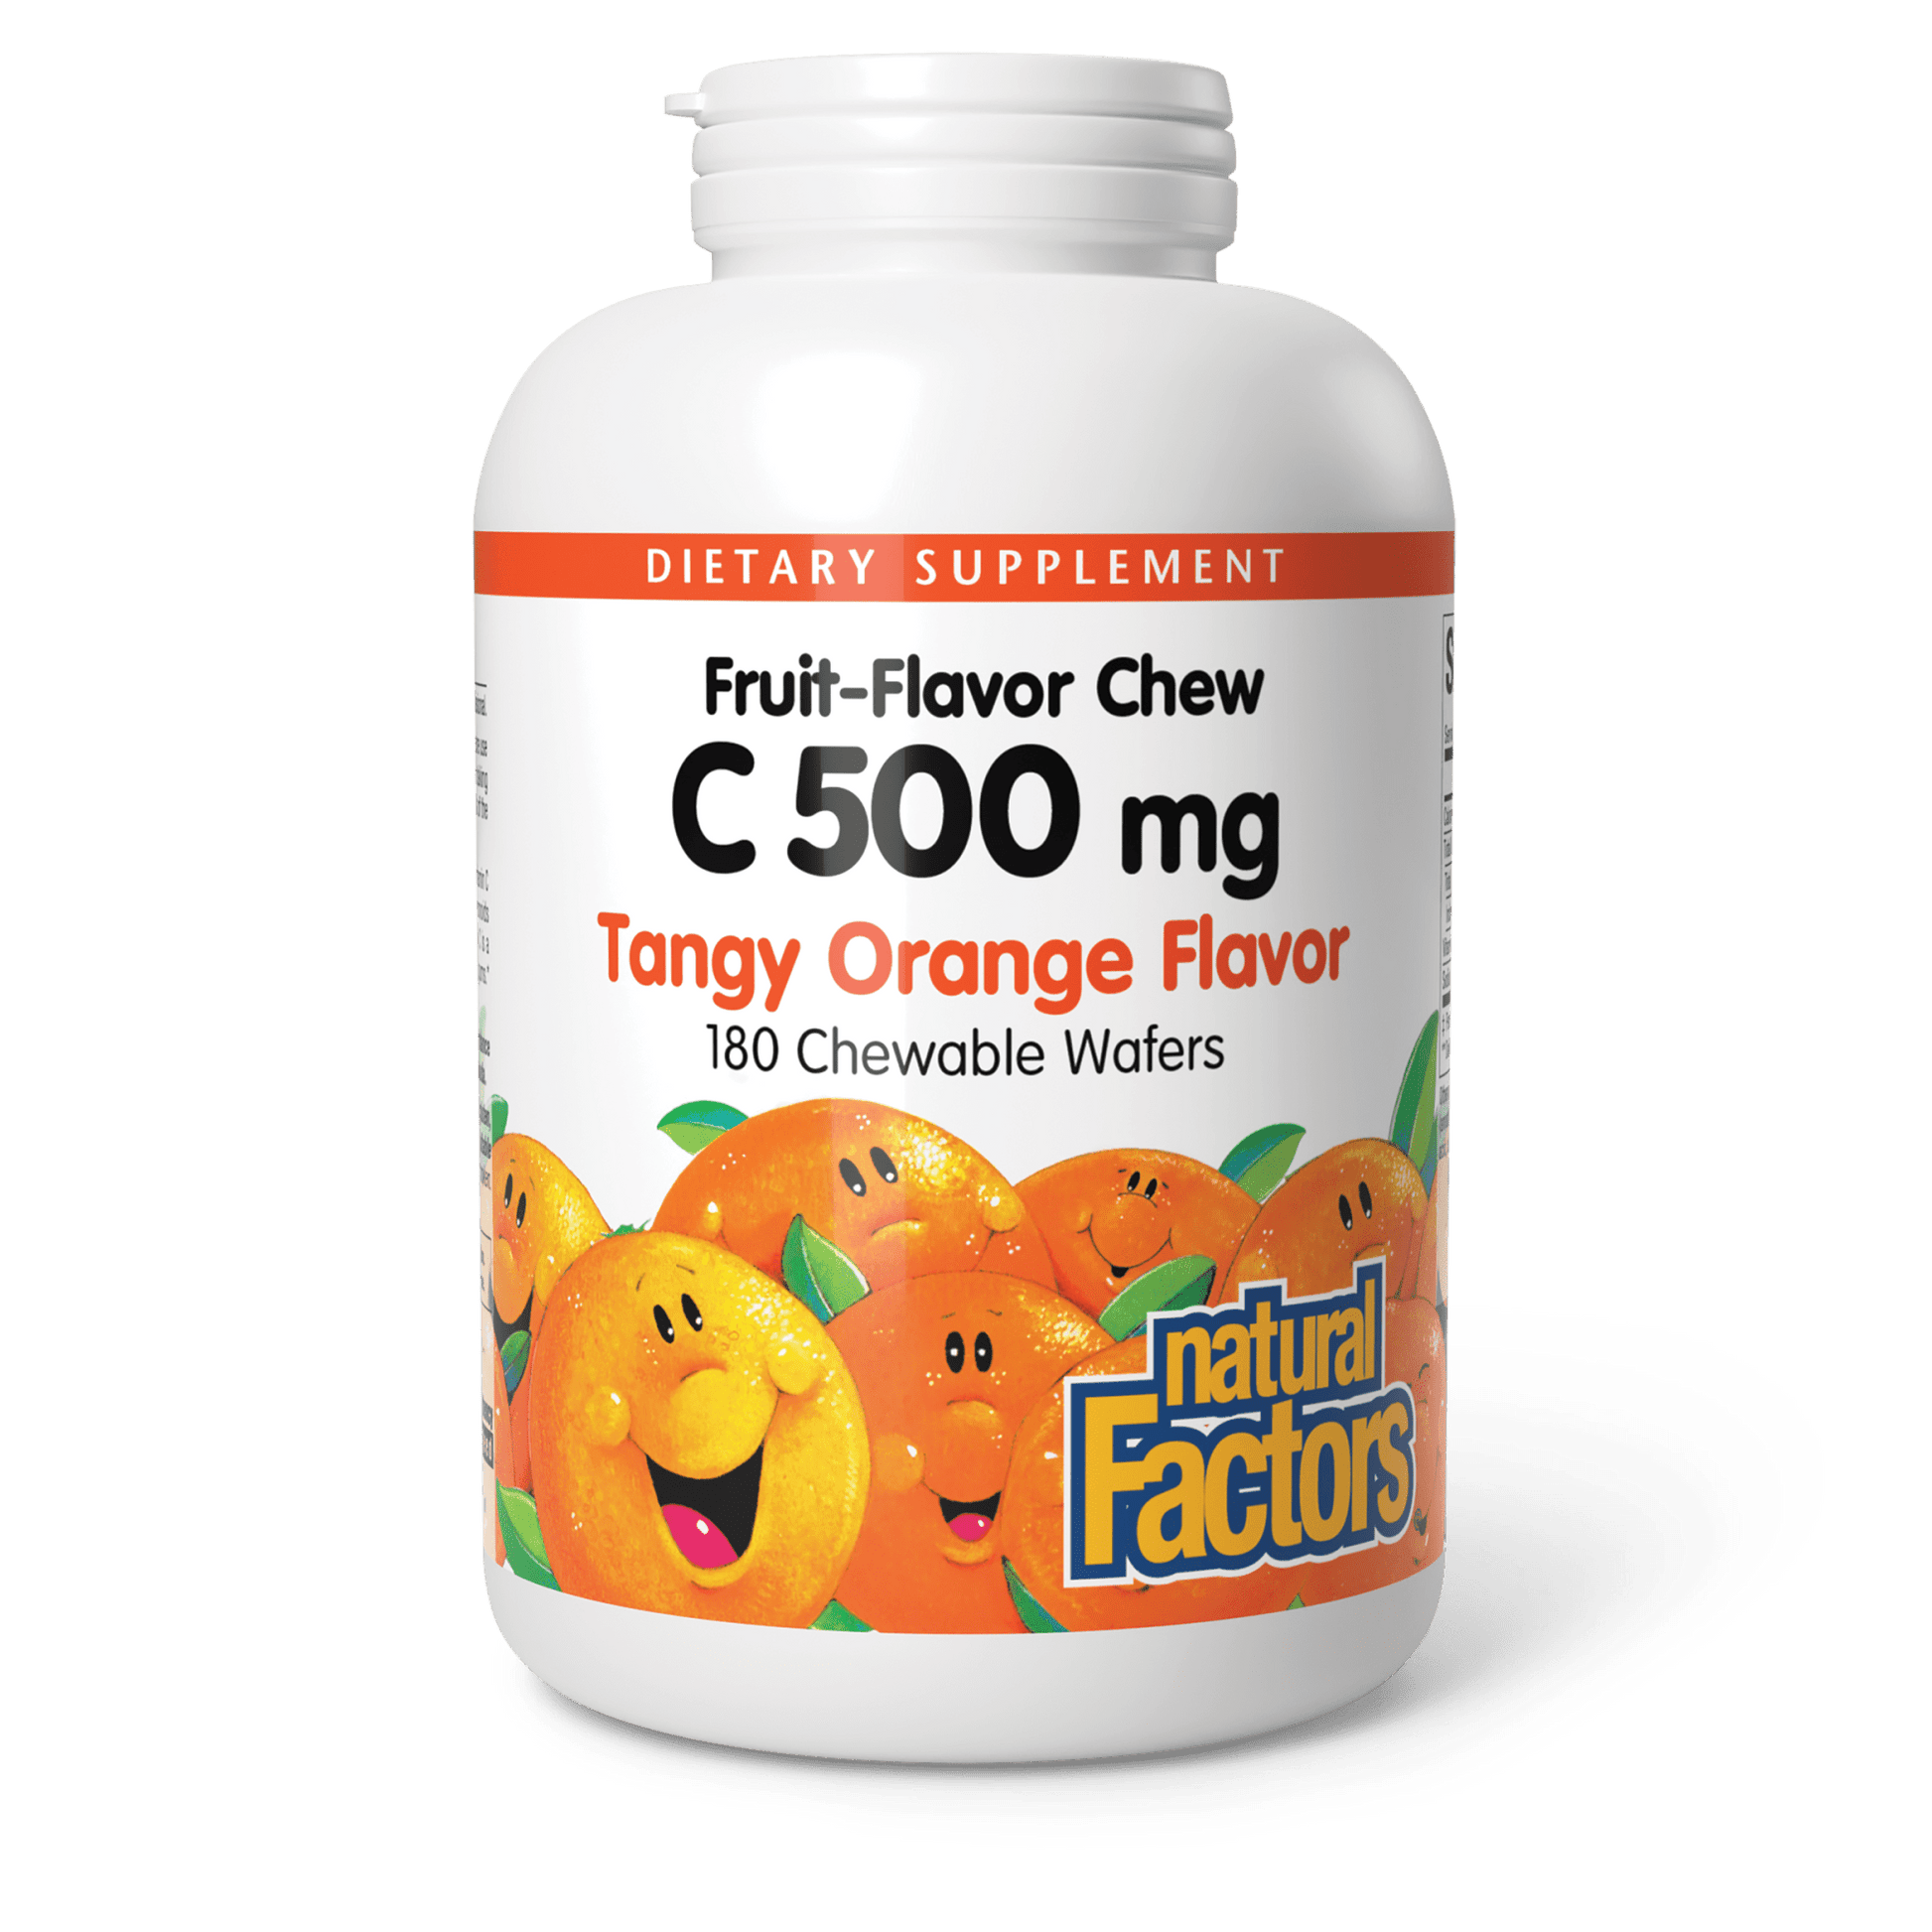 Vitamin C Fruit-Flavor Chew for Natural Factors |variant|hi-res|1331U